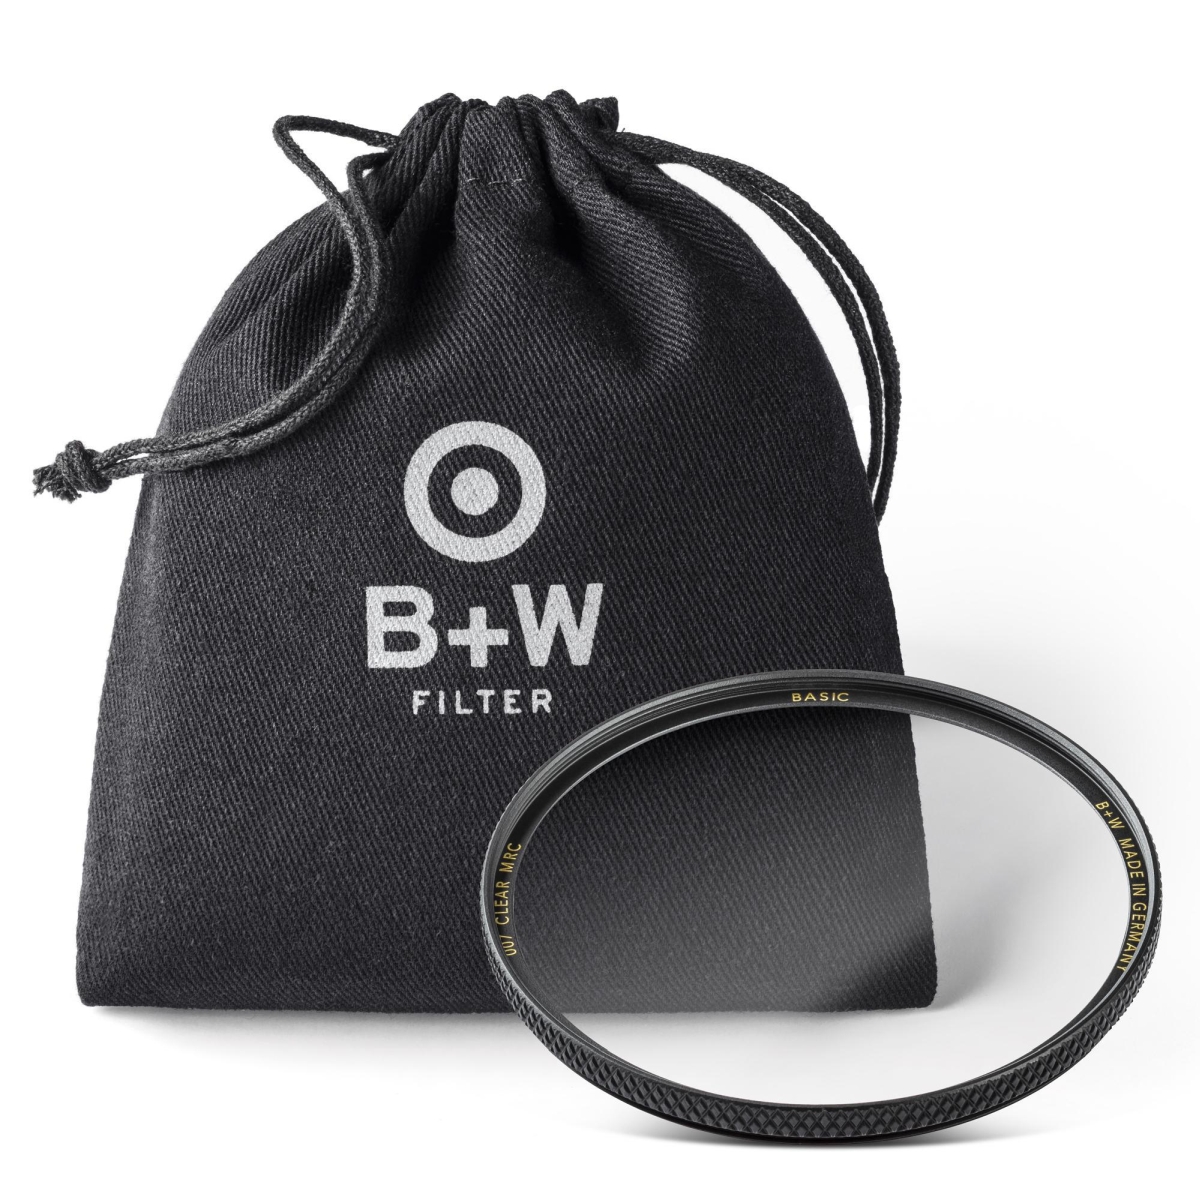 B+W Clear Filter 105 mm MRC Basic